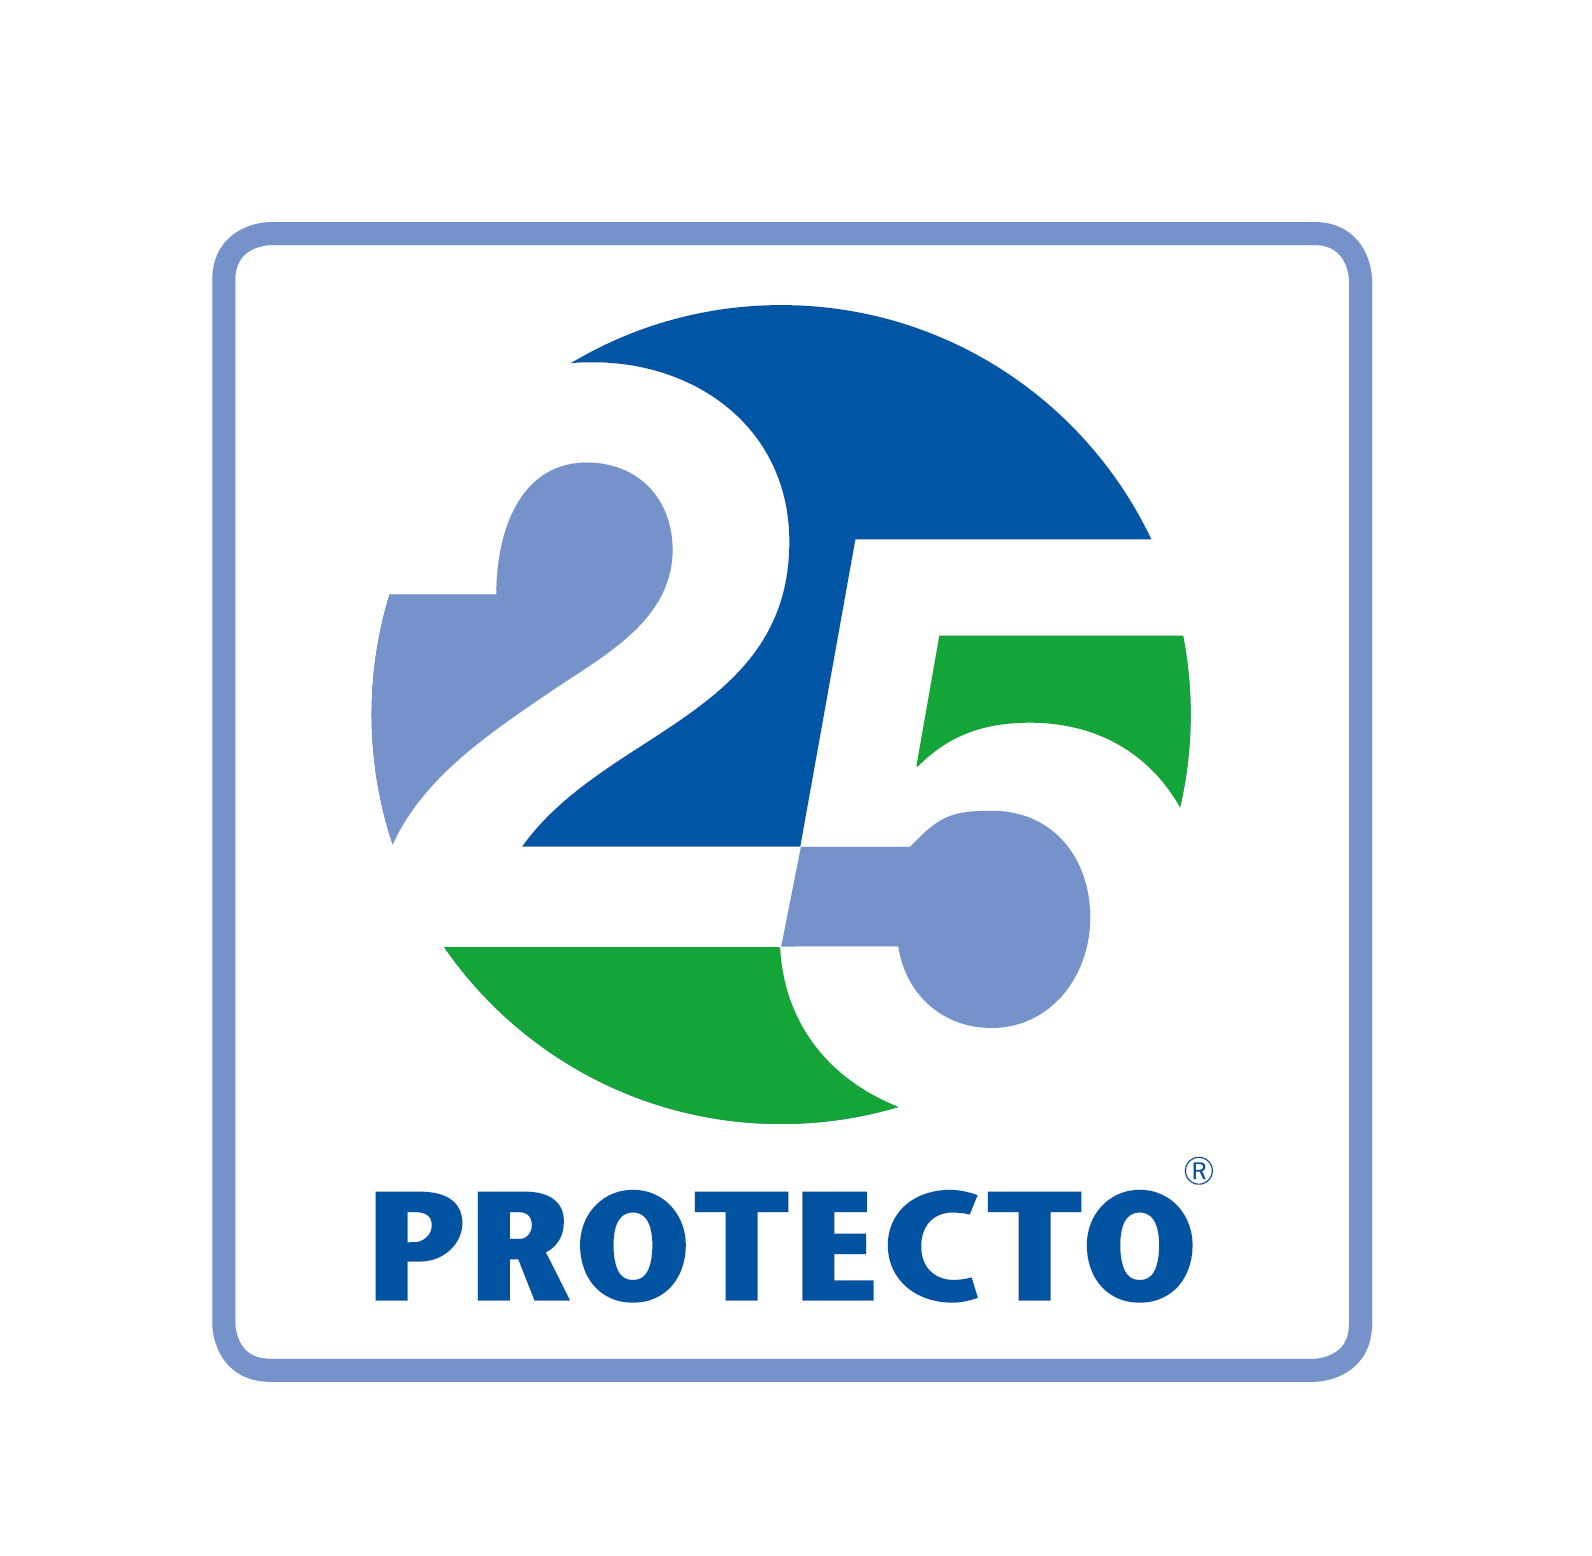 25 Jahre PROTECTO sicher lagern